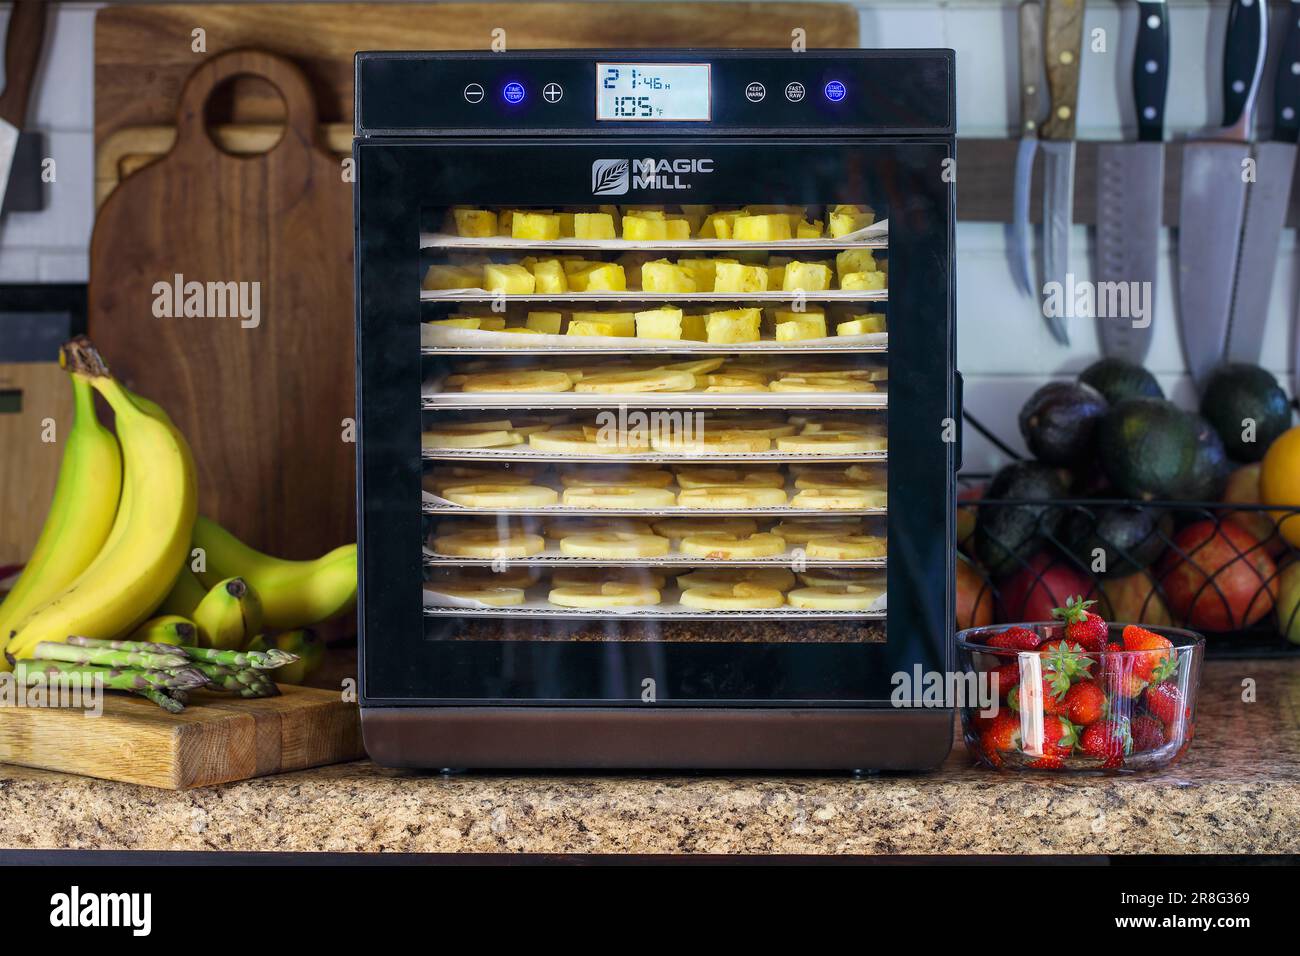 Zucht, KY, USA - 09. Mai 2023: Magic Mill Food Dehydrator auf Küchentheke mit frischer Ananas und Äpfeln, die auf Regalen trocknen. Stockfoto